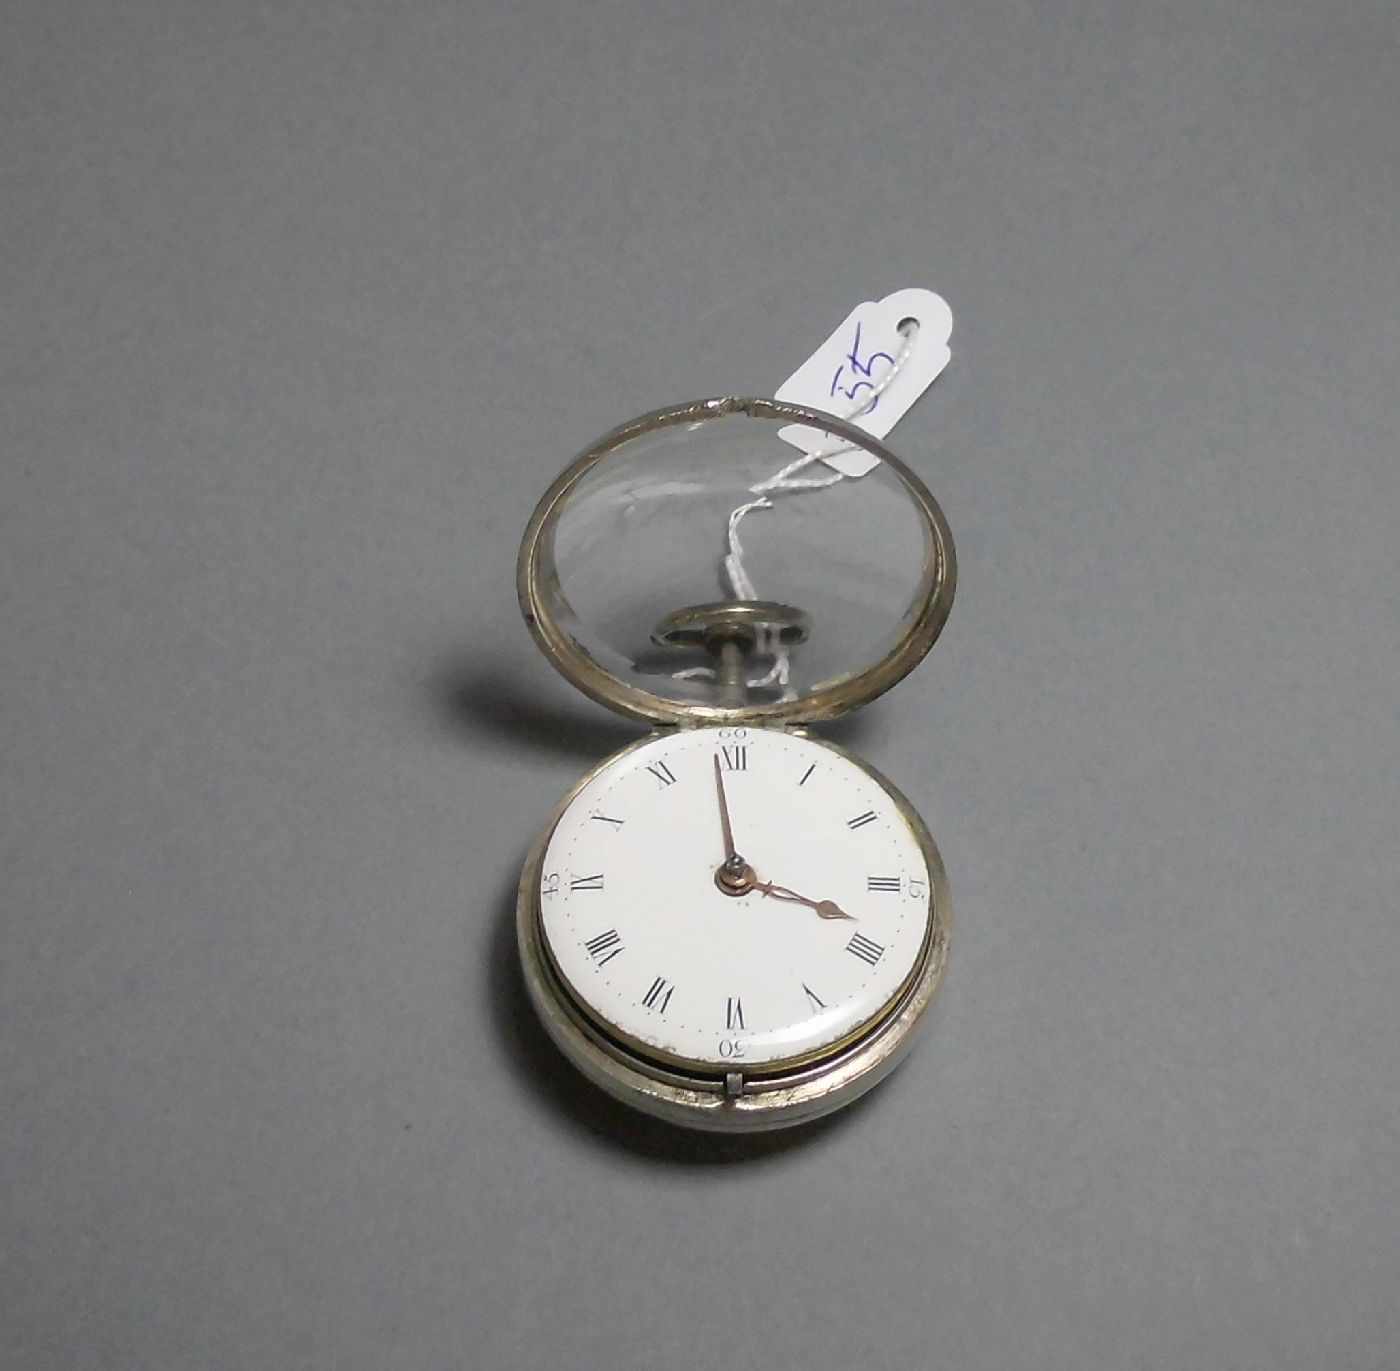 SPINDELTASCHENUHR / pocketwatch, im Silbergehäuse, London 1864, mit identischem Übergehäuse, Meister - Image 7 of 8